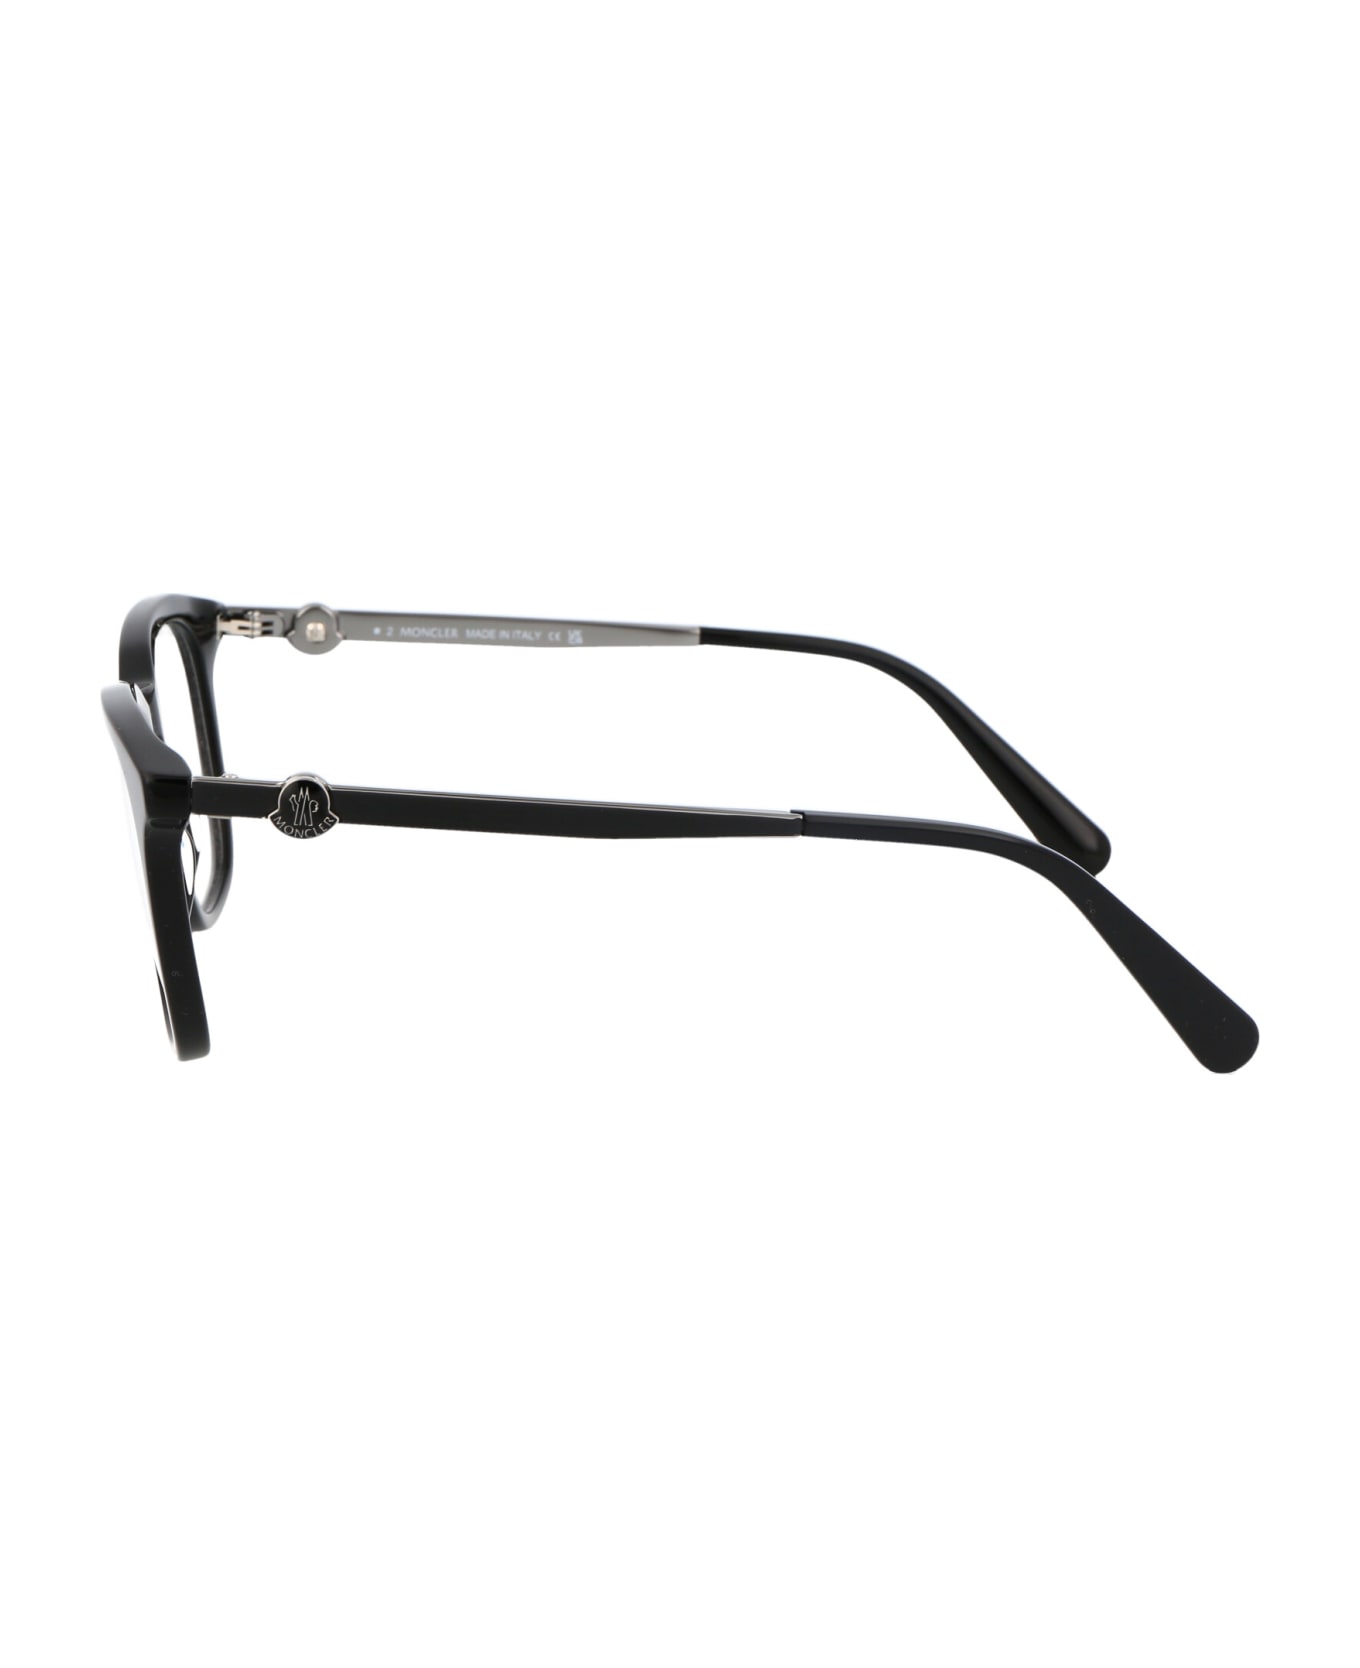 Moncler Eyewear Ml5176 Glasses - 001 Nero Lucido アイウェア